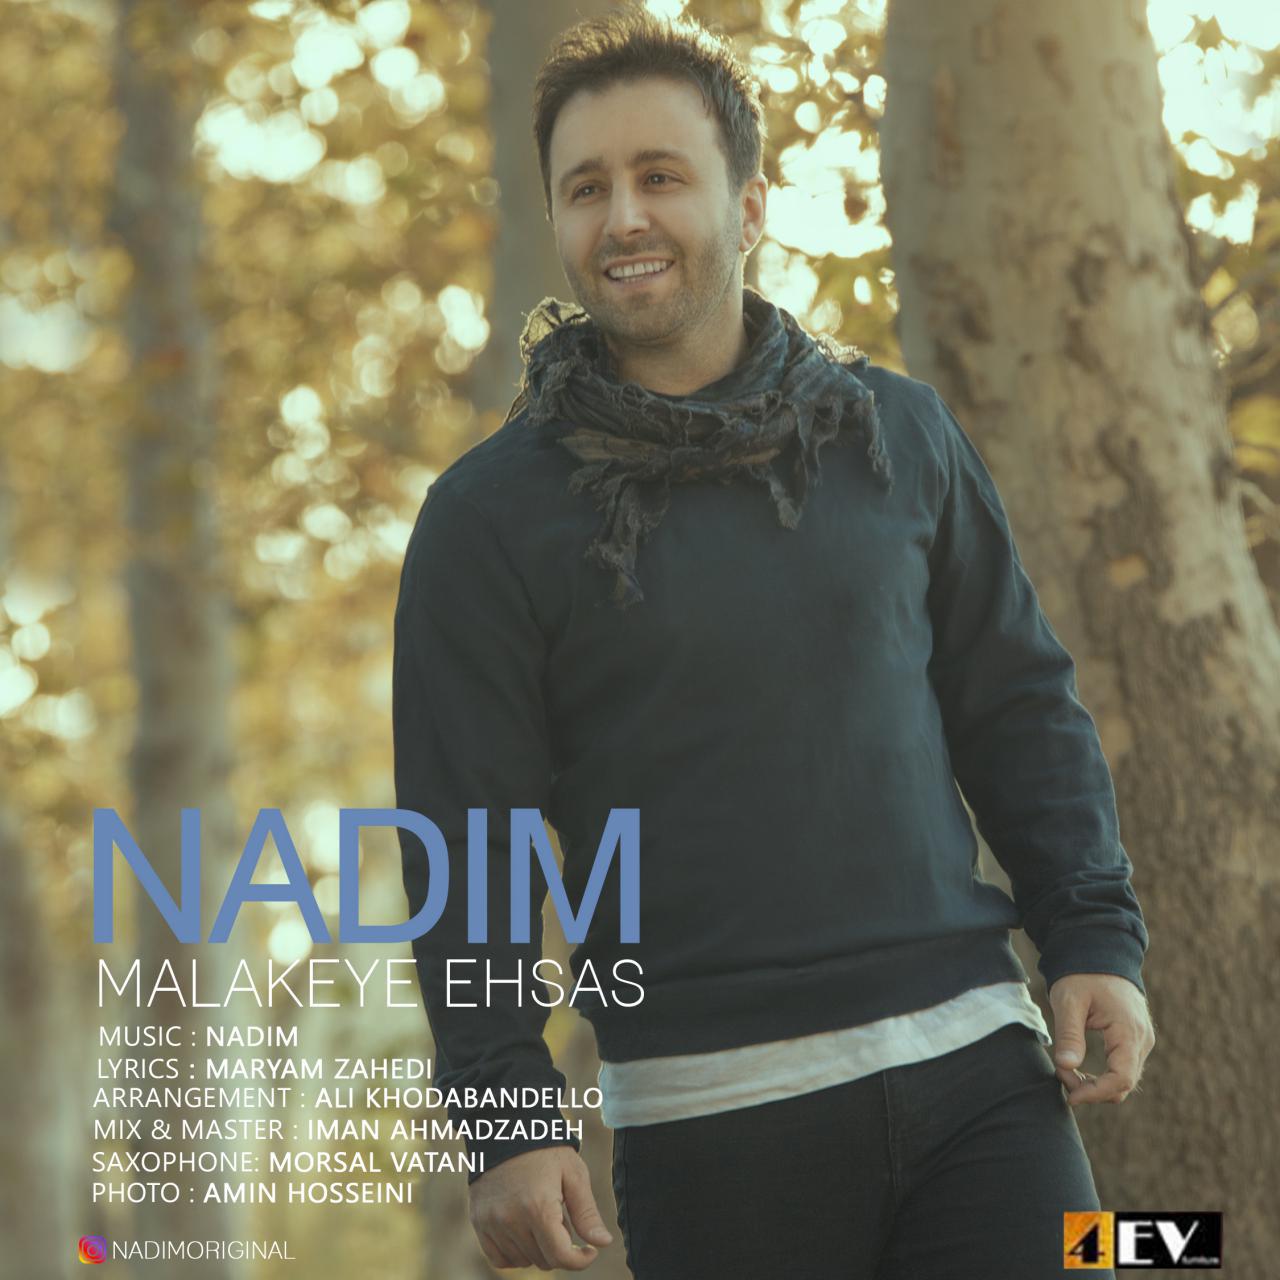  دانلود آهنگ جدید ندیم - ملکه احساس | Download New Music By Nadim  - Malakeye Ehsas